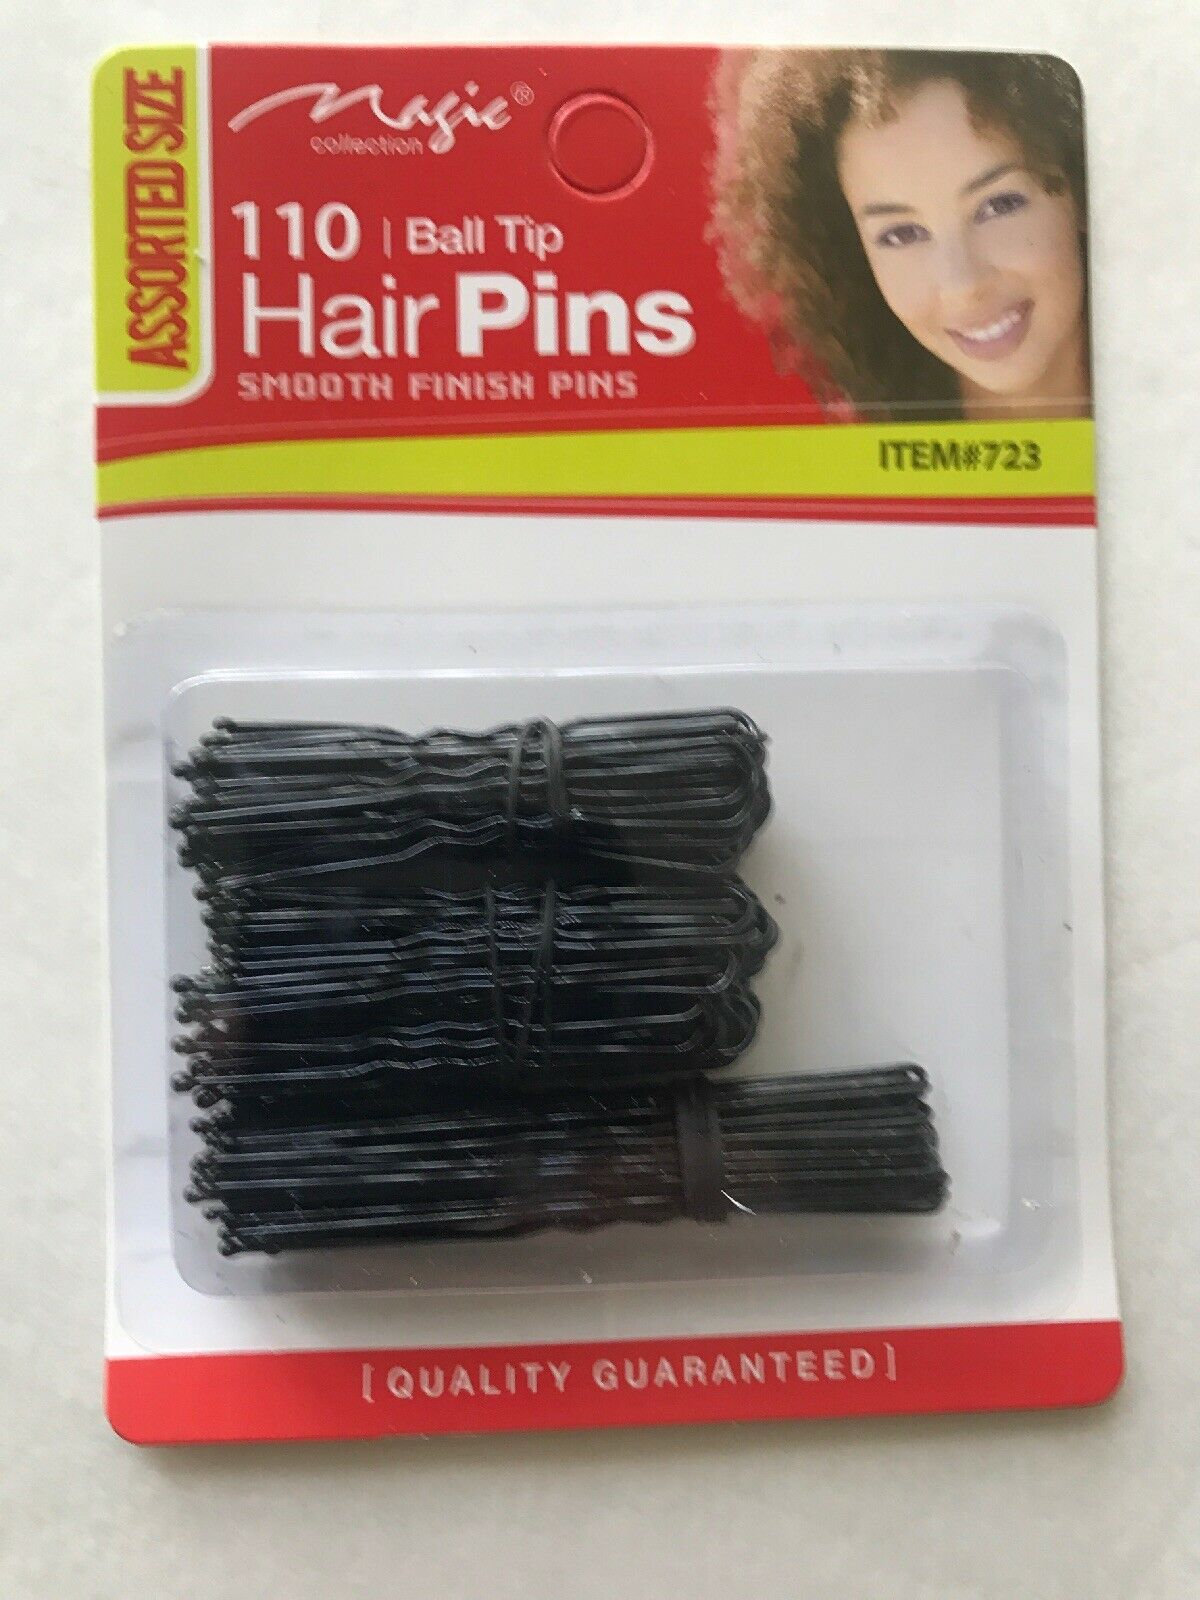 110 Hair pins smooth finish